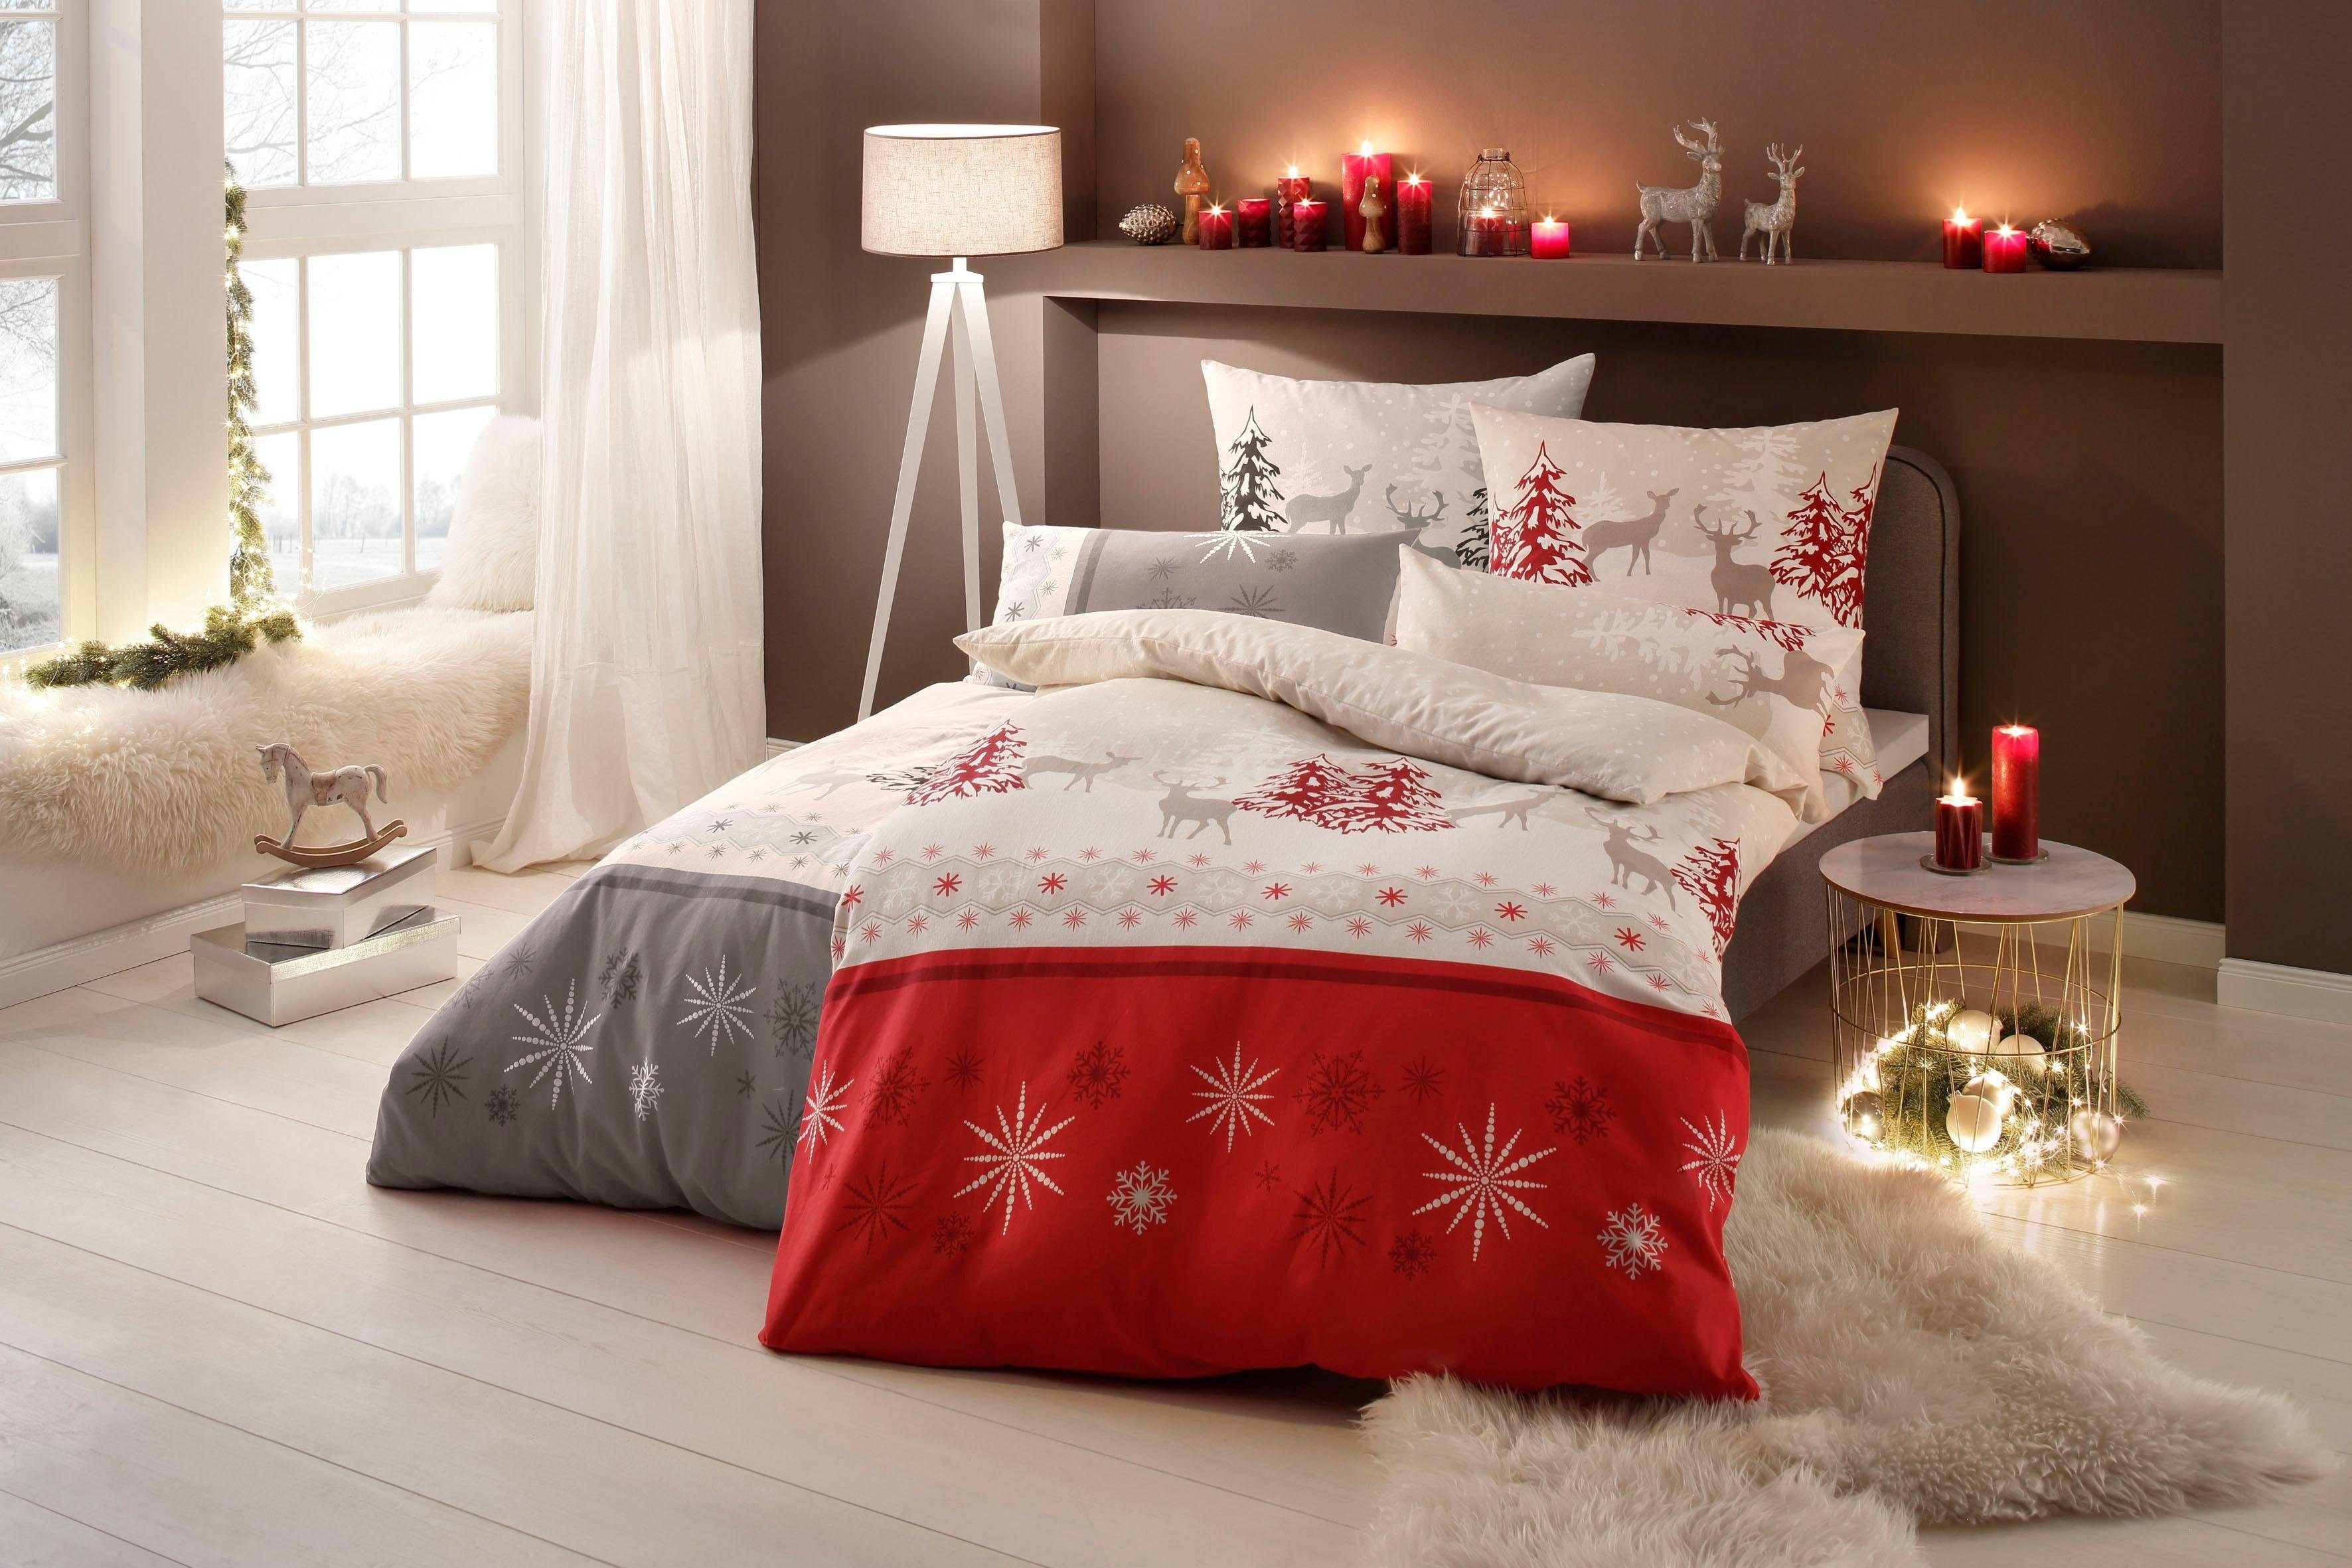 cm, Bettwäsche Venua rot/beige Weihnachtsbettwäsche 2 teilig, oder home, Linon, in 155x220 Gr. my Winterbettwäsche, 135x200